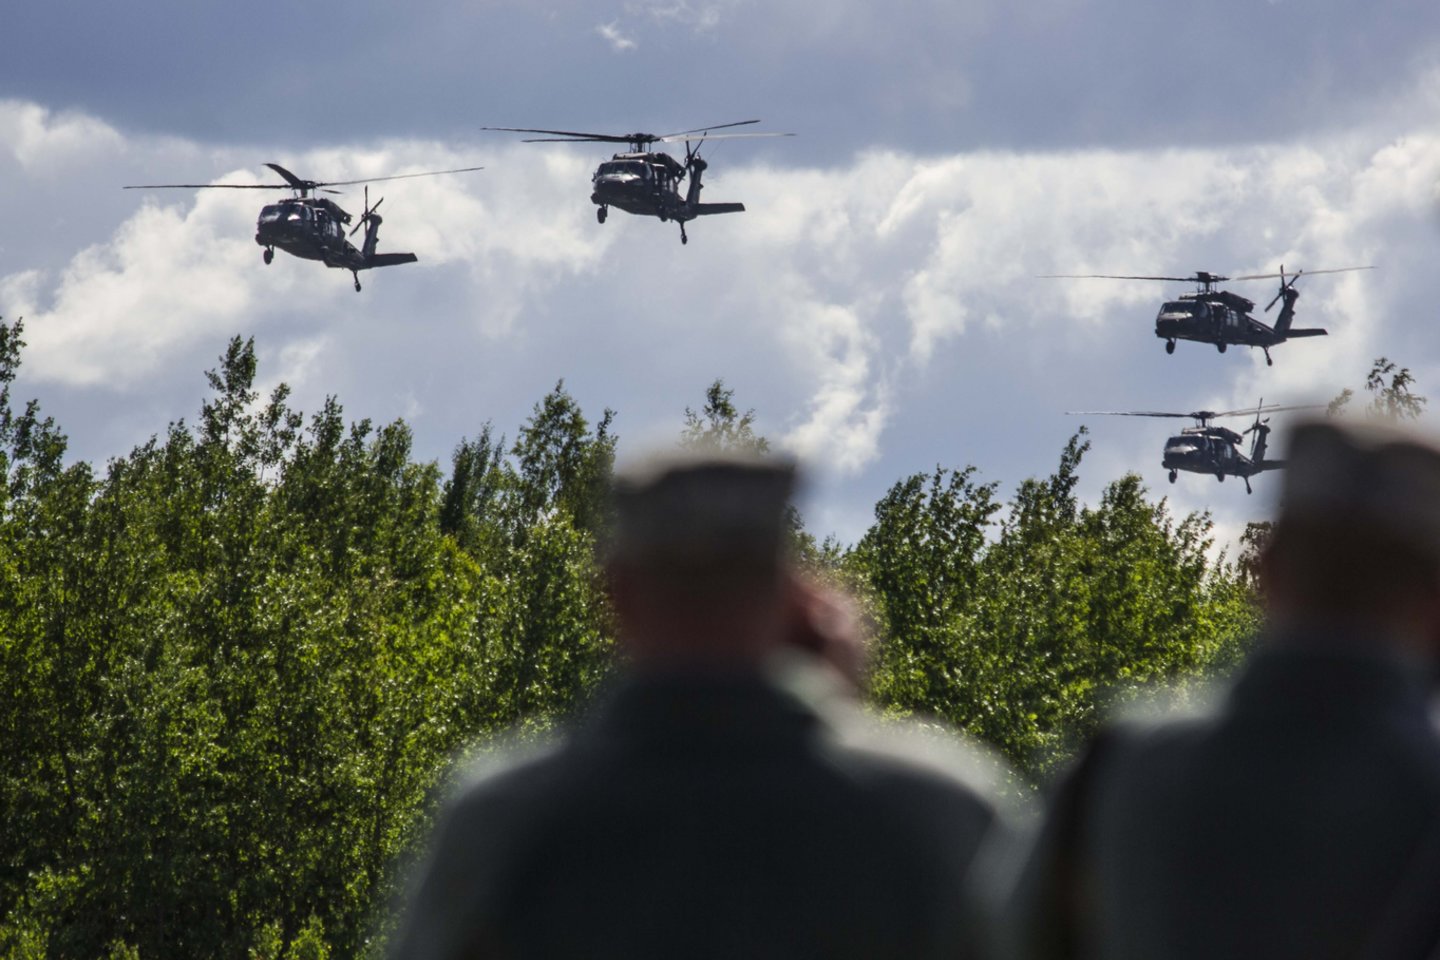 Lietuva penktadienį pasirašė sutartį su Jungtinėmis Valstijomis dėl keturių karinių sraigtasparnių „Black Hawk“ įsigijimo.<br>I.Budzeikaitės/KAM nuotr.